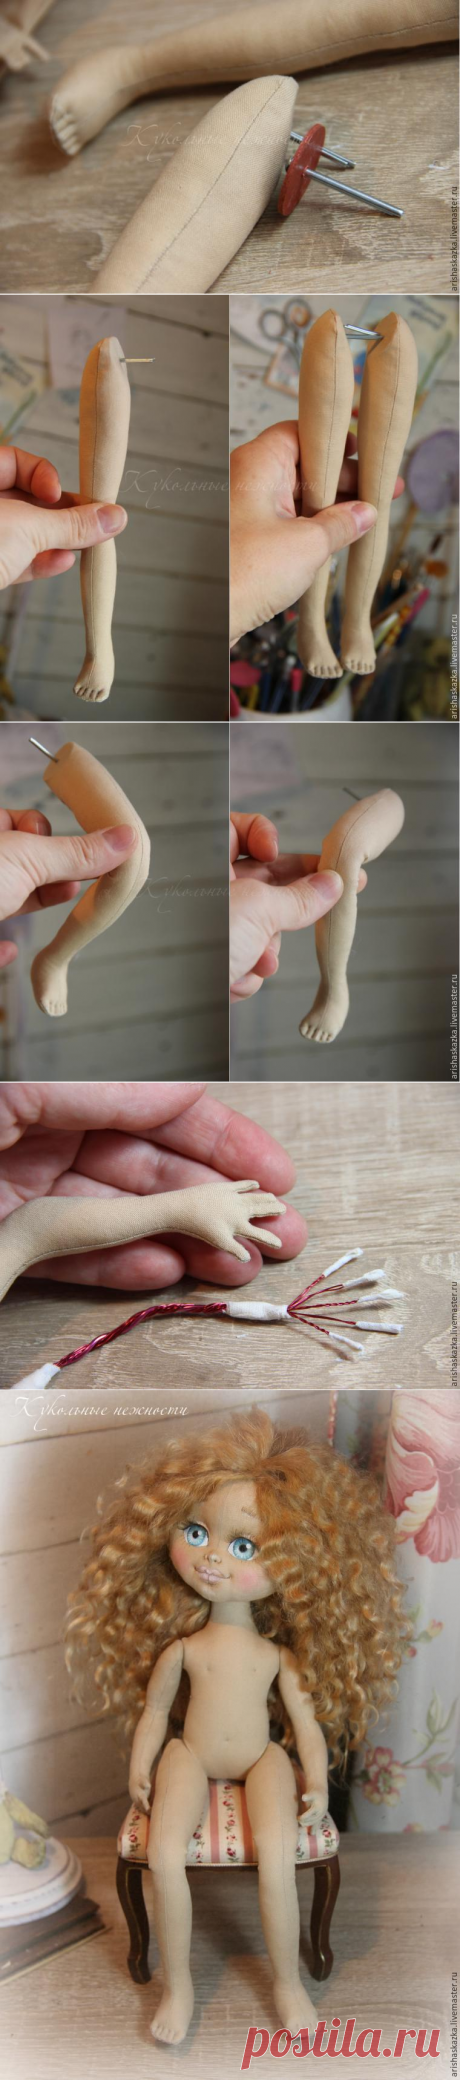 Крепление ручек и ножек у текстильной куклы - Ярмарка Мастеров - ручная работа, handmade